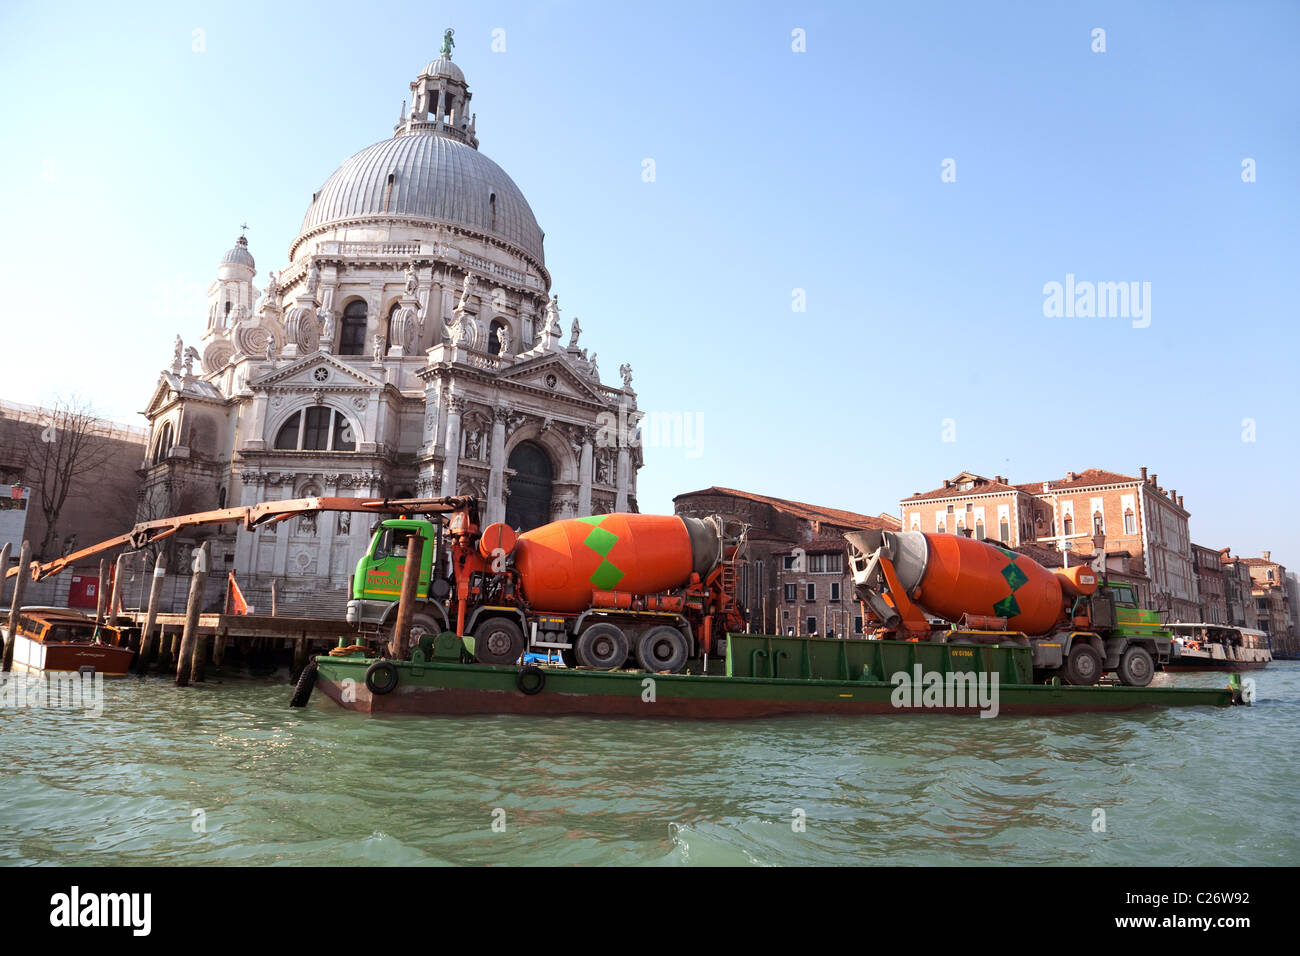 Restauration et réparation avec deux mélangeurs de ciment sur une péniche, à l'église de Santa Maria della Salute, Grand Canal, Venise, Italie Banque D'Images